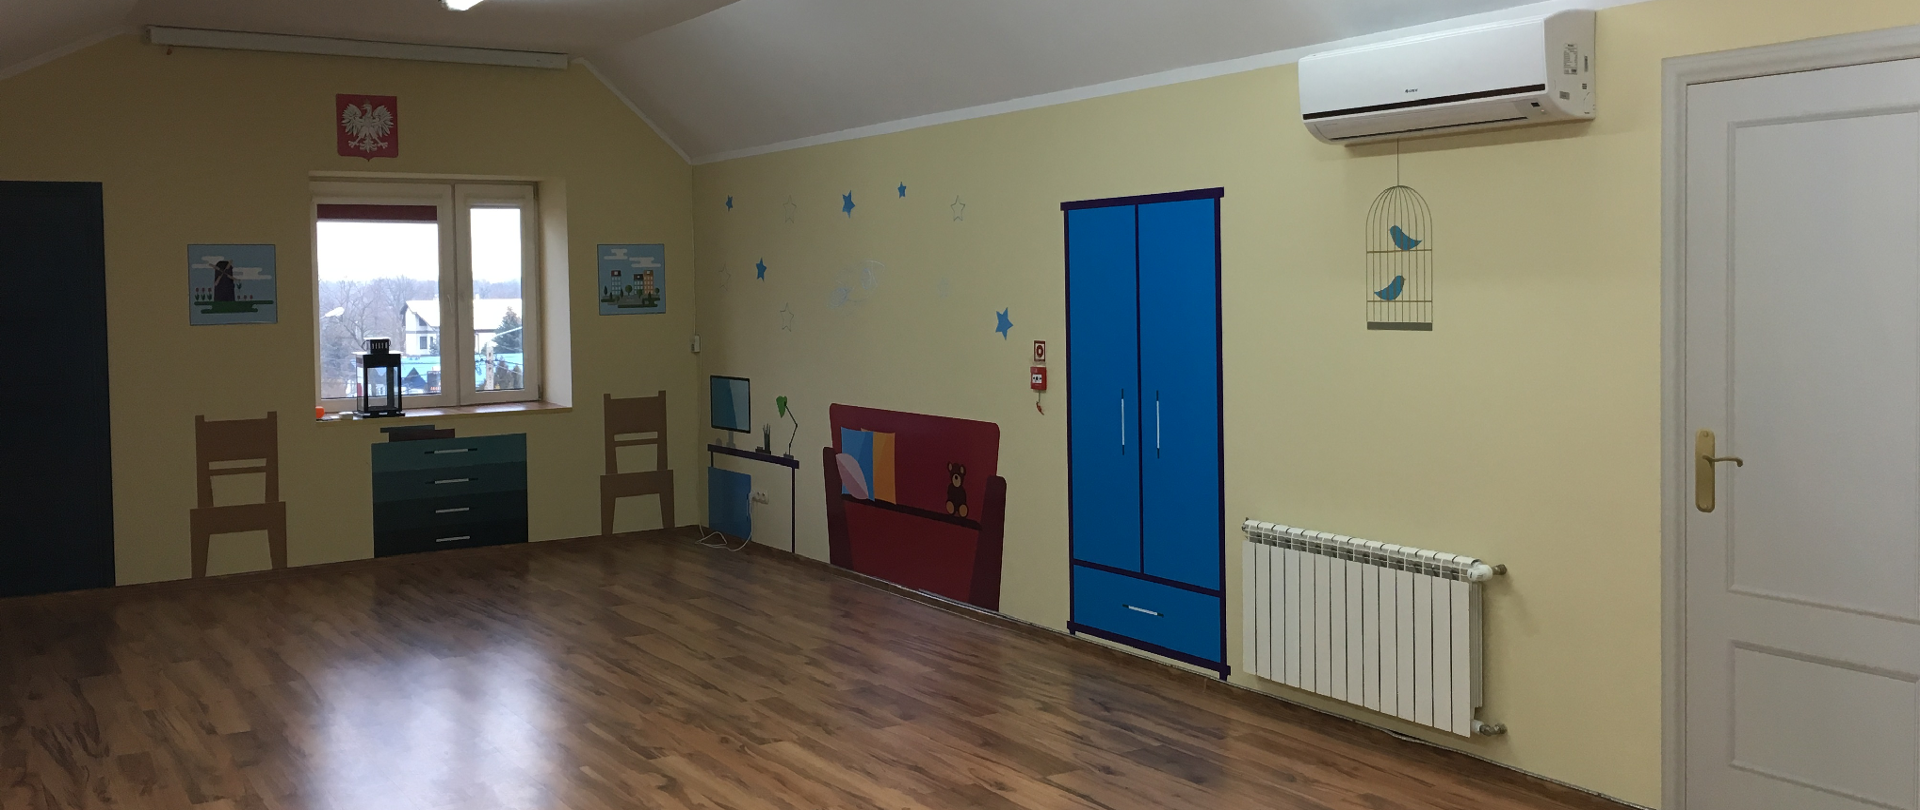 Zdjęcie przedstawia salę edukacyjną, na ścianach naklejki imitujące wyposażenie pomieszczenia w szafę, łóżko itp.